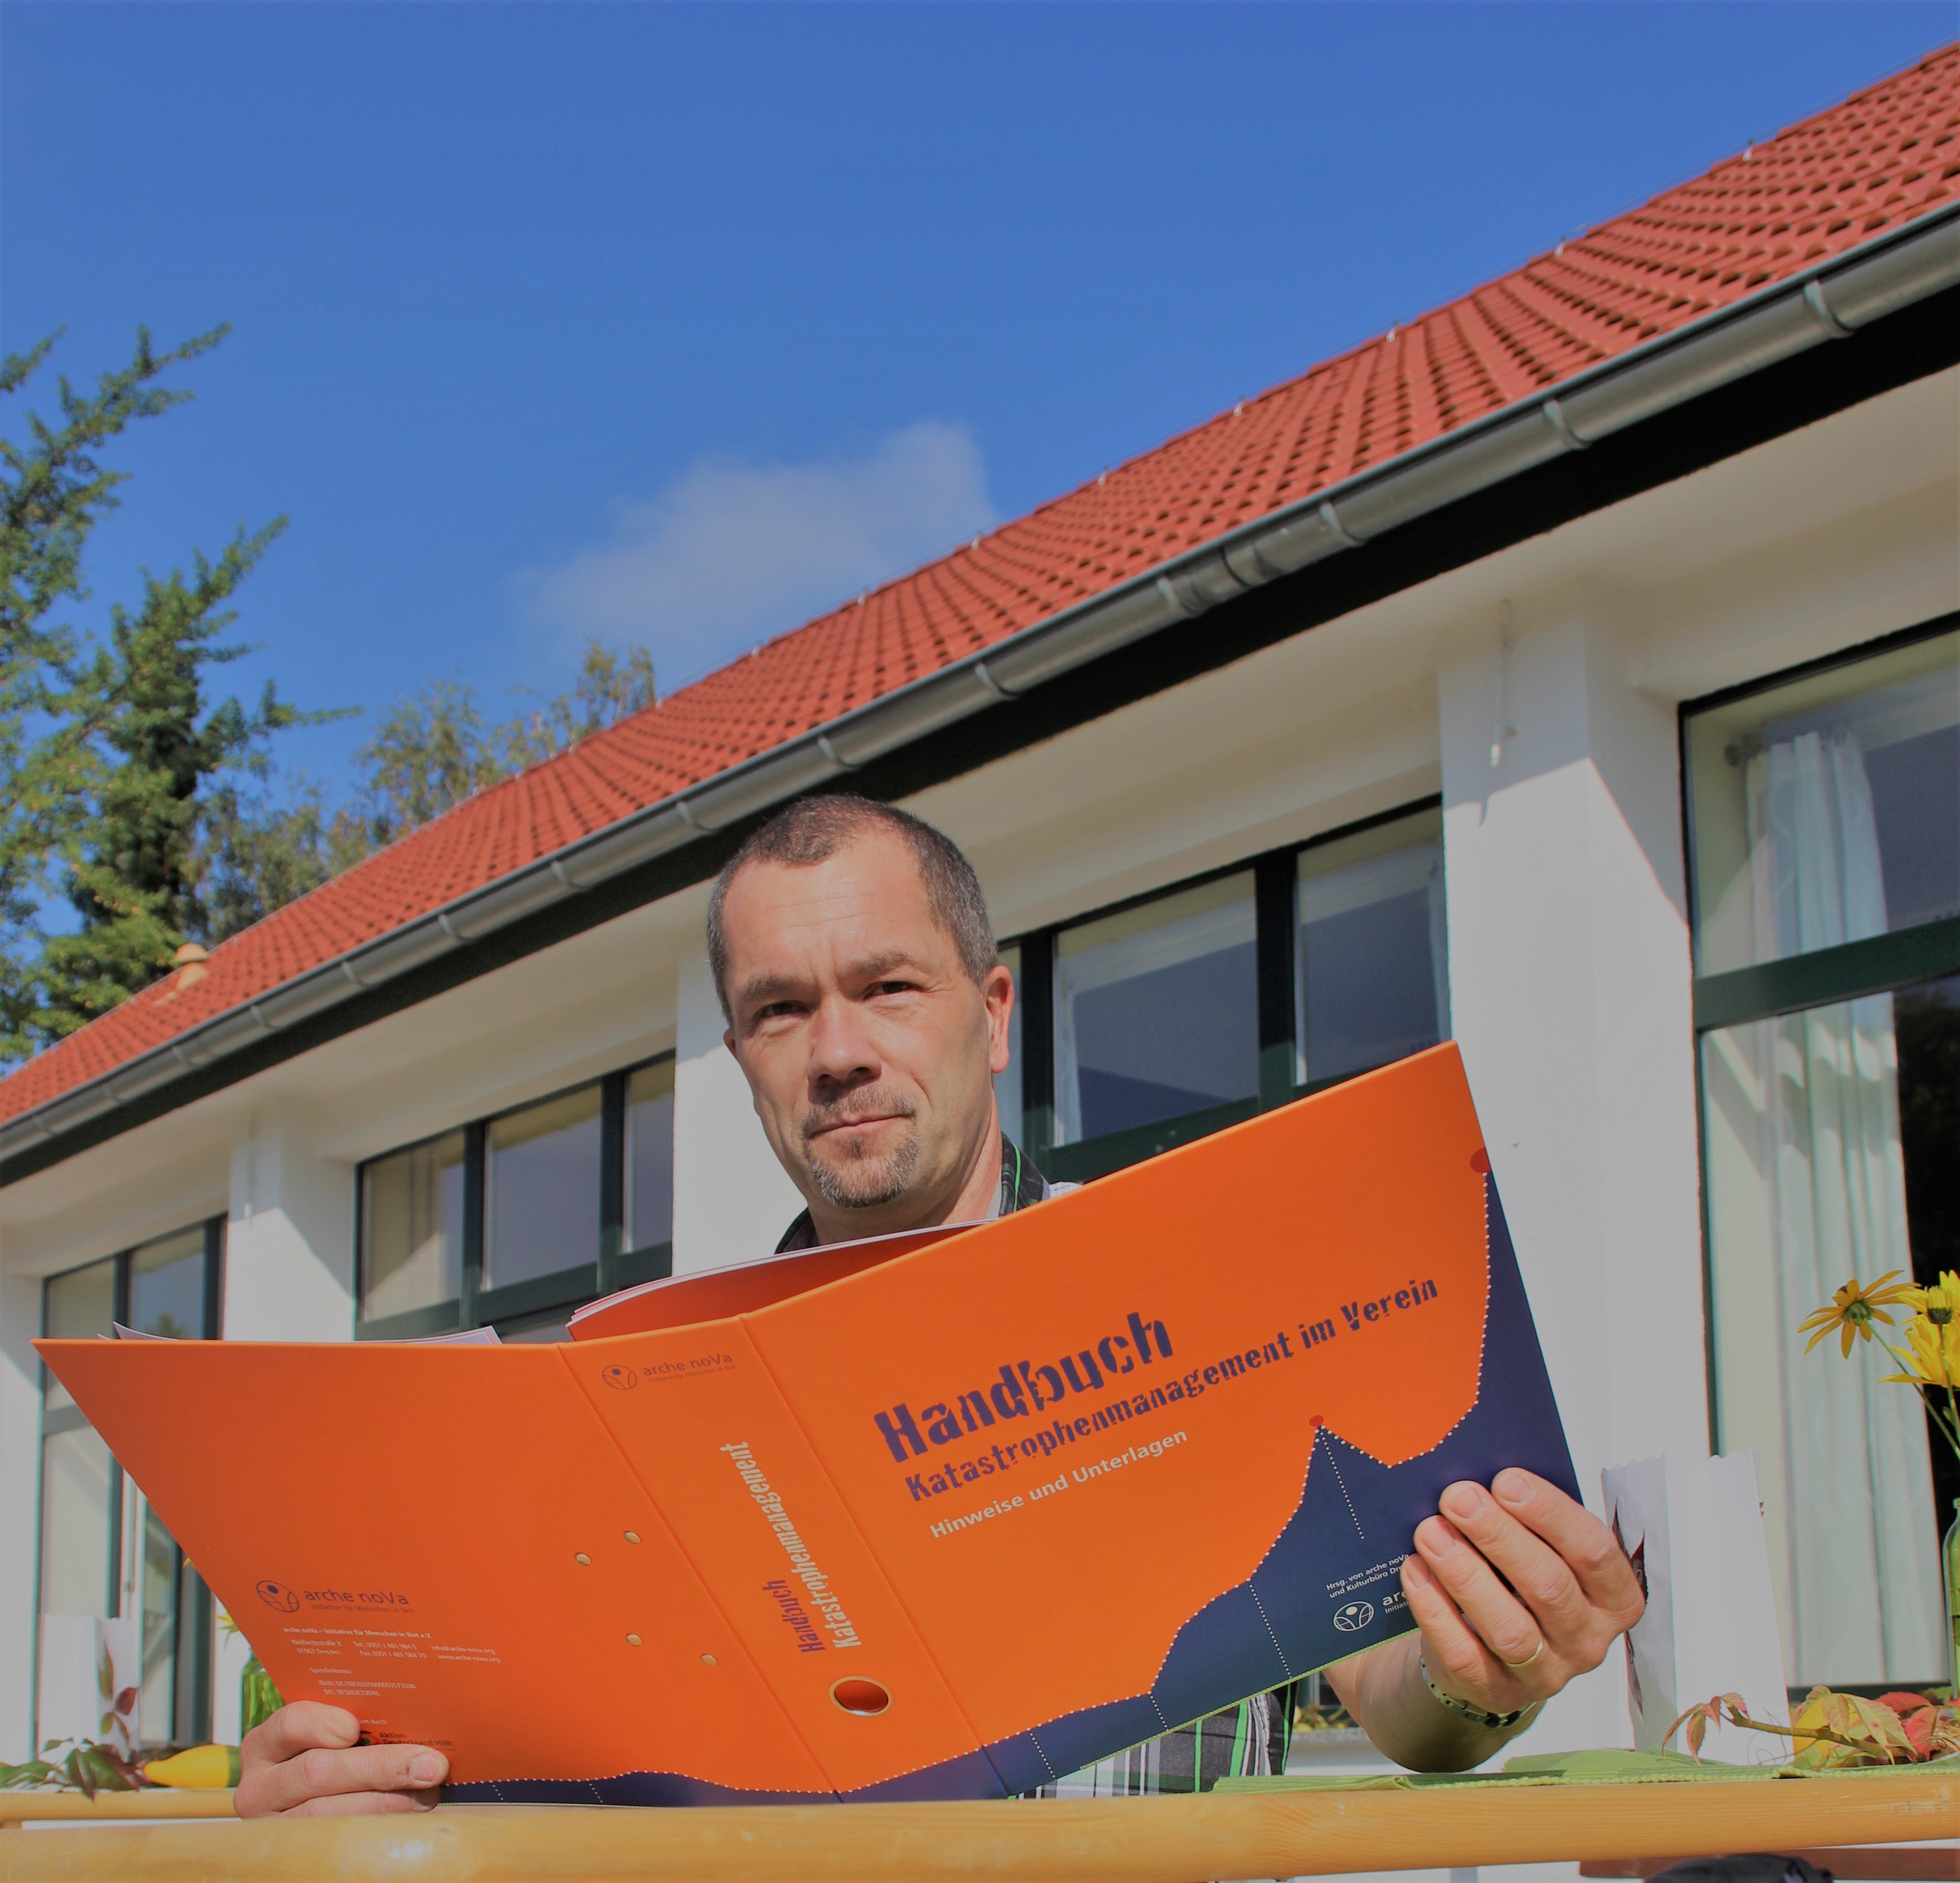 Christoph Wähler hält einenen orangen Aktenordner in der Hand, mit der Aufschirft Handbuch Katastrophenmanagement.